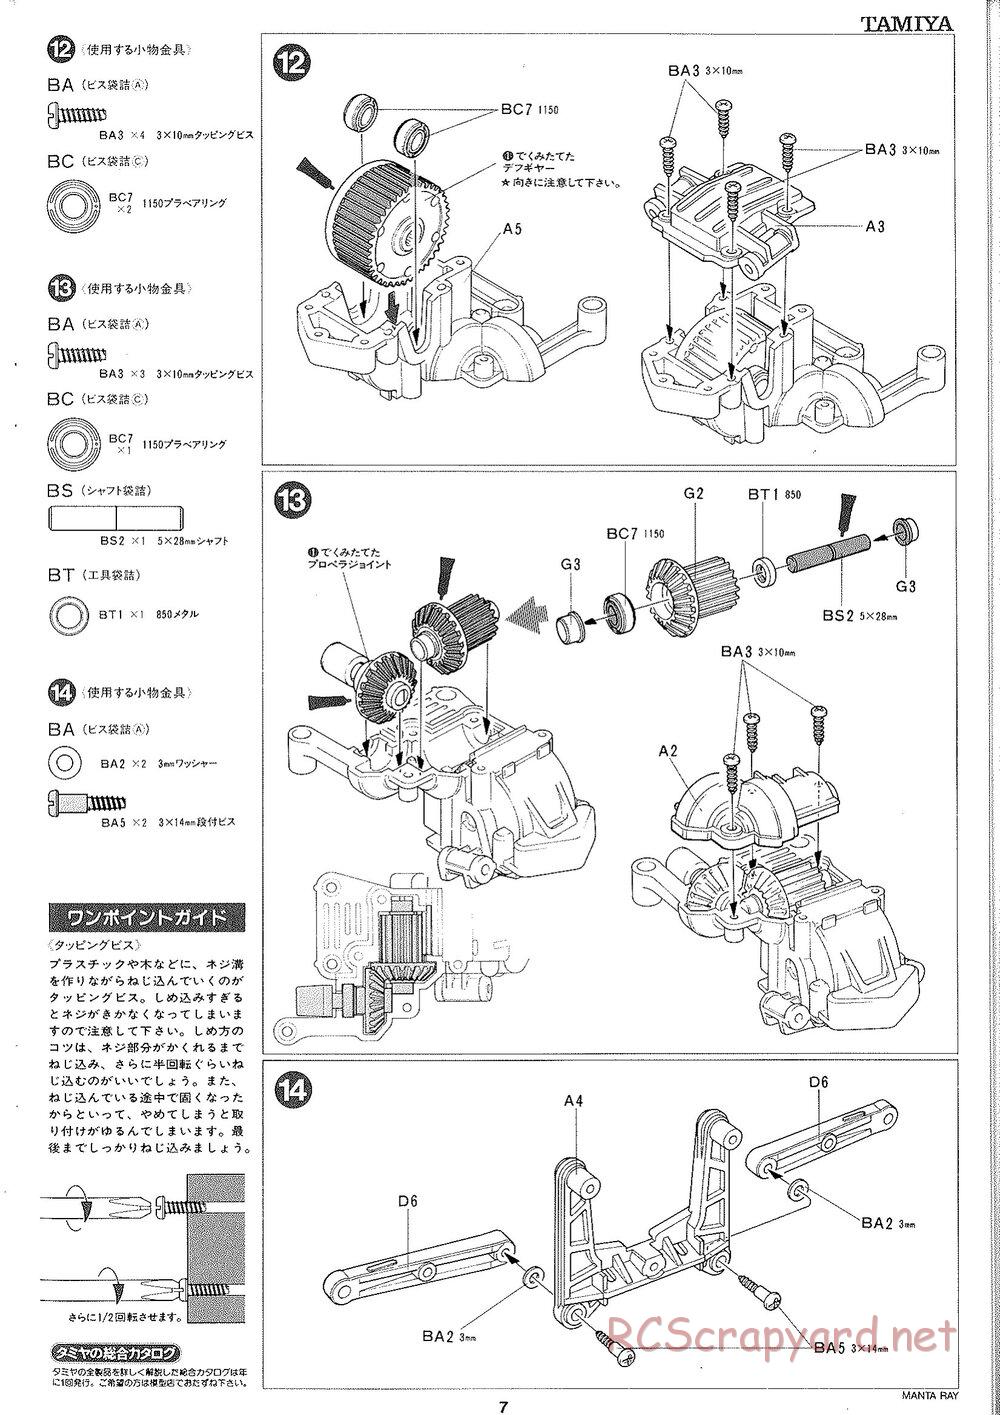 Tamiya - Manta Ray 2005 - DF-01 Chassis - Manual - Page 8